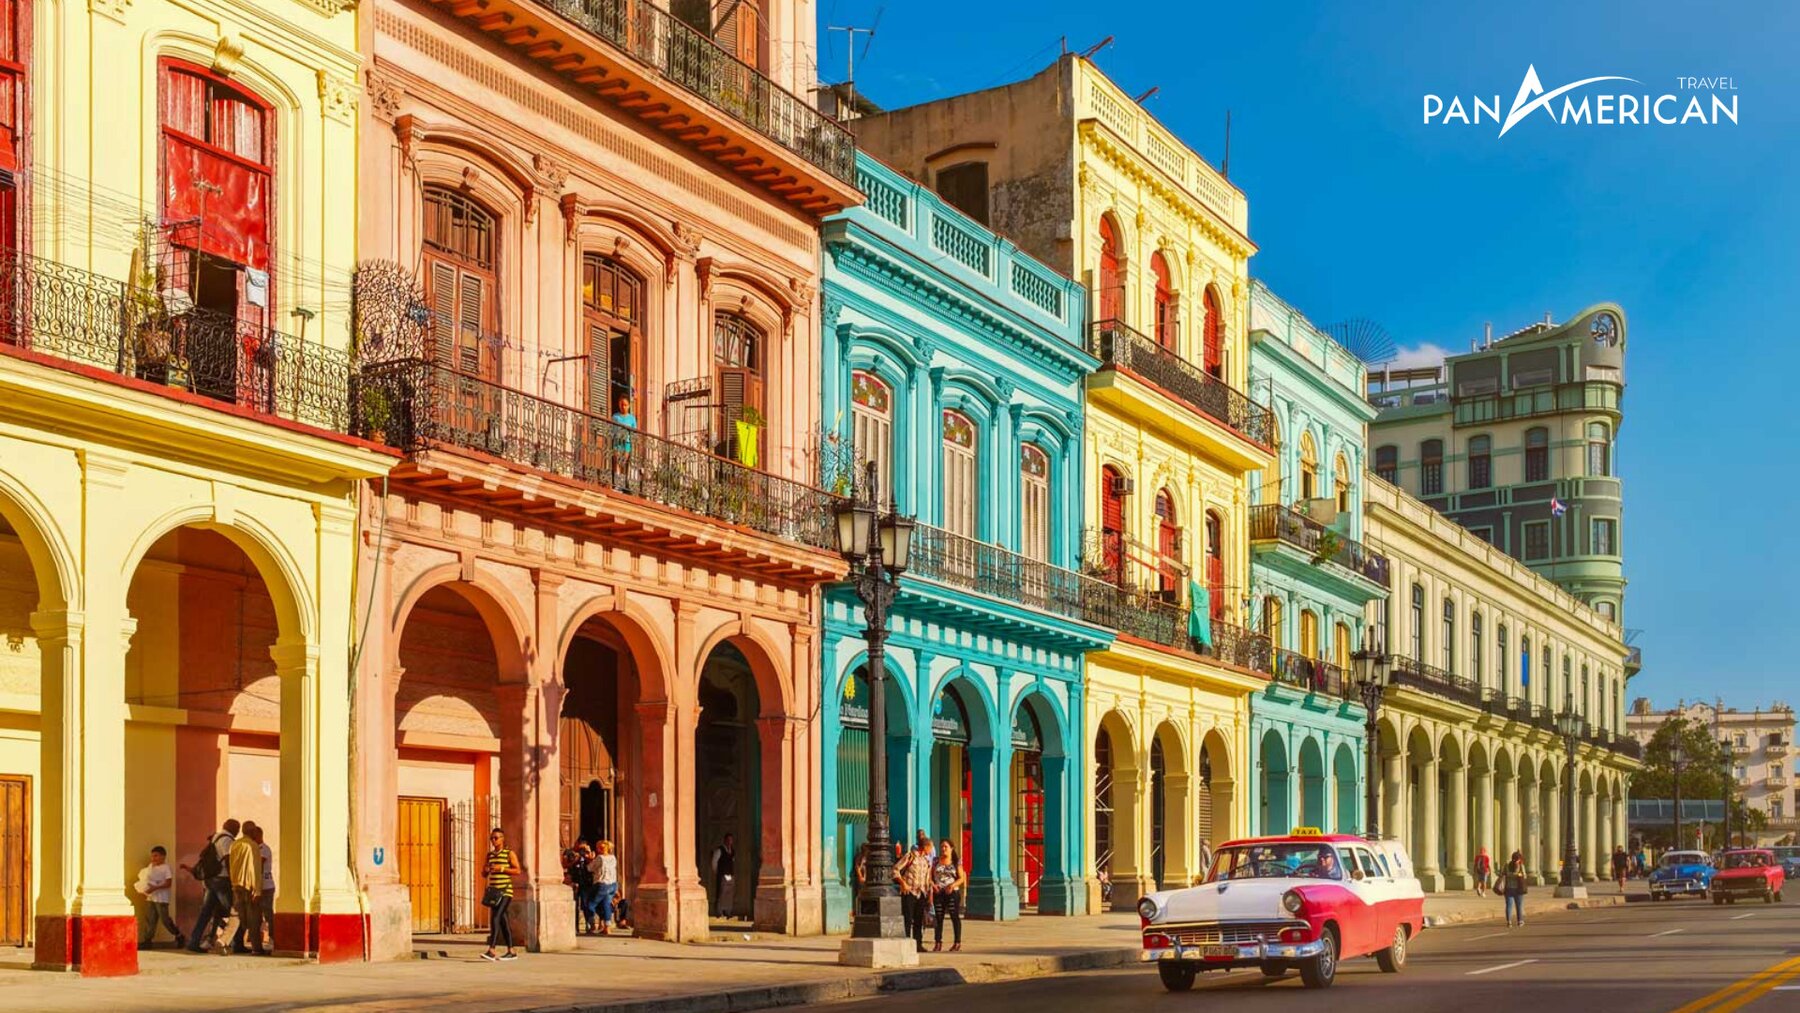 Các dãy nhà sắc màu mang đậm chất Tây Ban Nha ở Havana